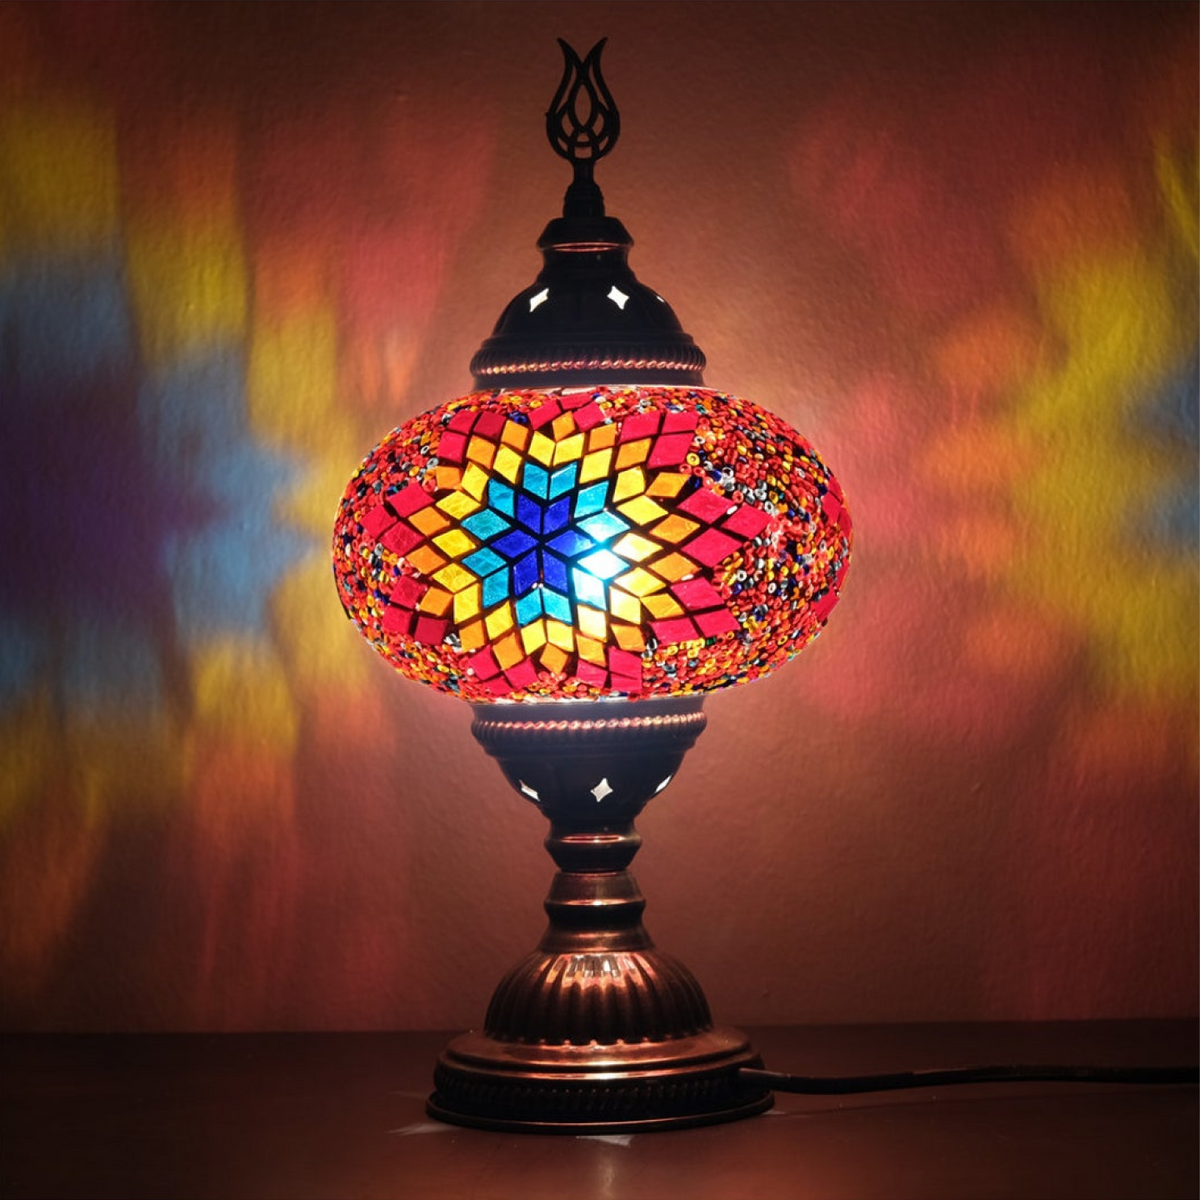 Mosaic Small Table lamp